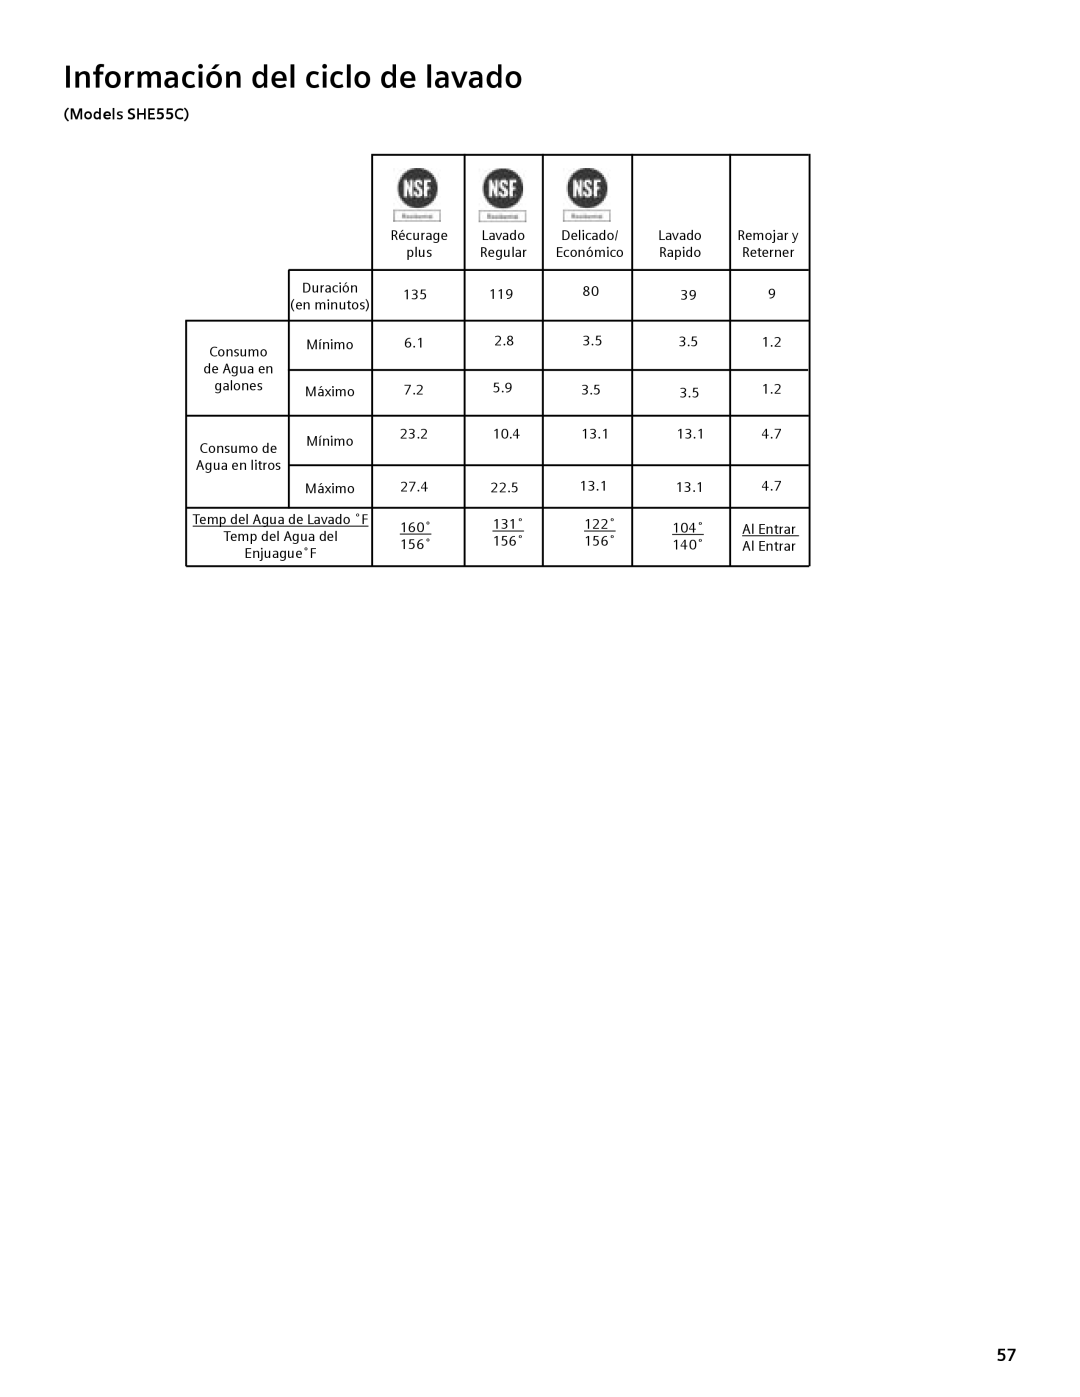 Compaq manual Información del ciclo de lavado, Models SHE55C, Duración, Consumo 